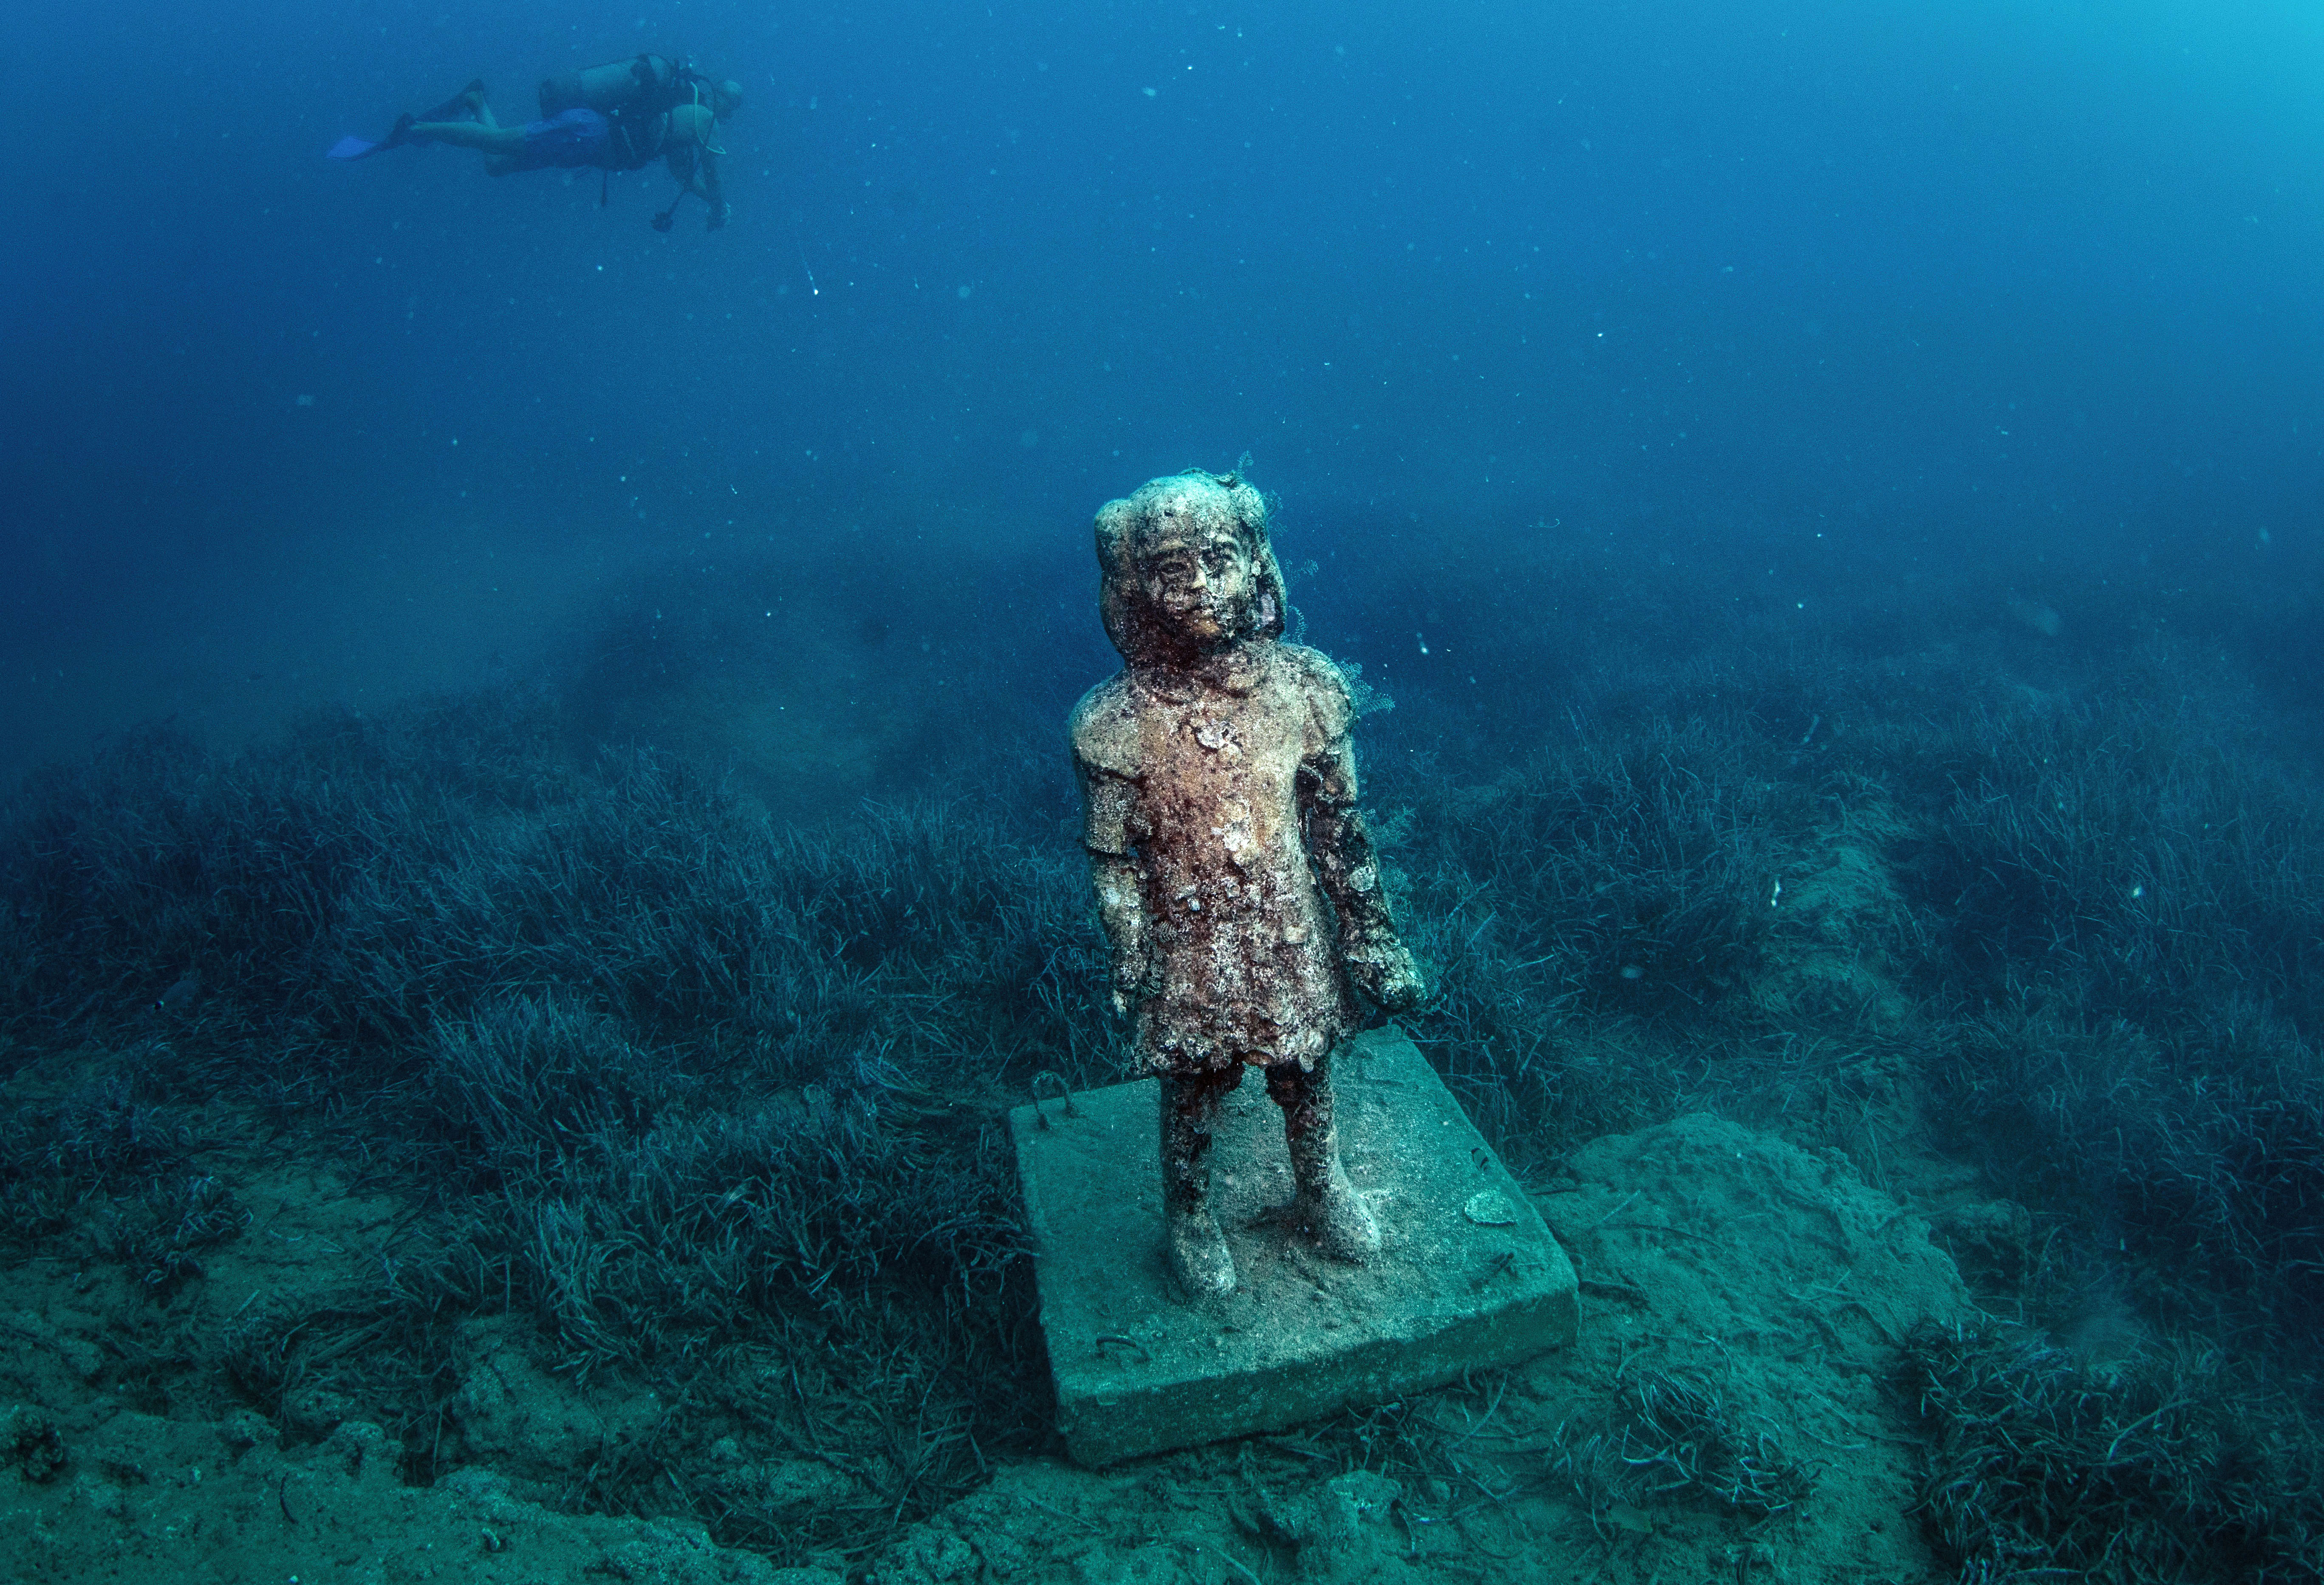 Turkey's first underwater museum 'Side Underwater Museum'